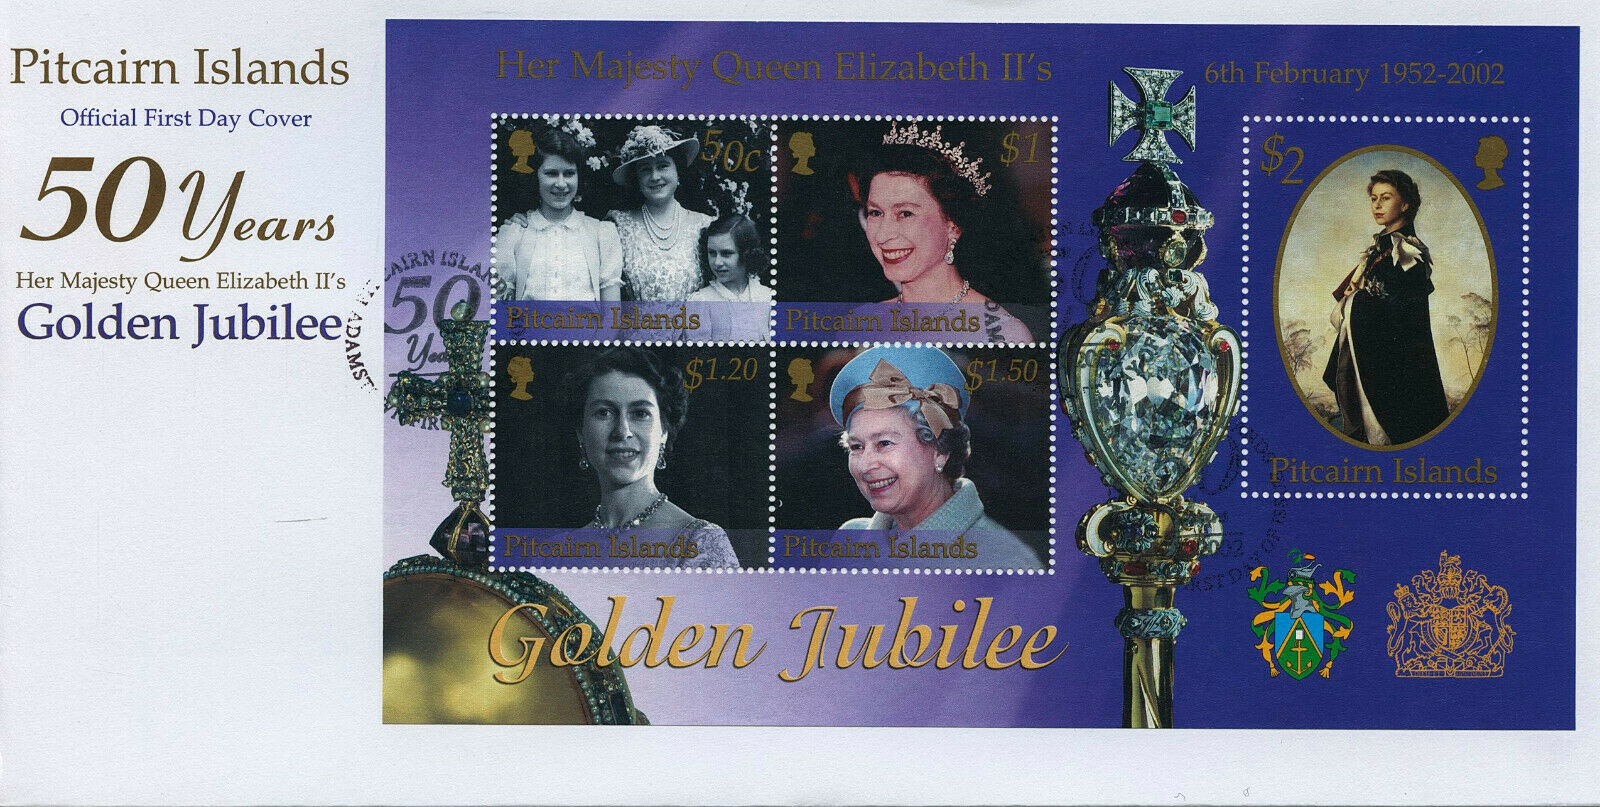 Pitcairn Islands 2002 FDC Royalty Stamps Queen Elizabeth II Golden Jubilee 5v MS